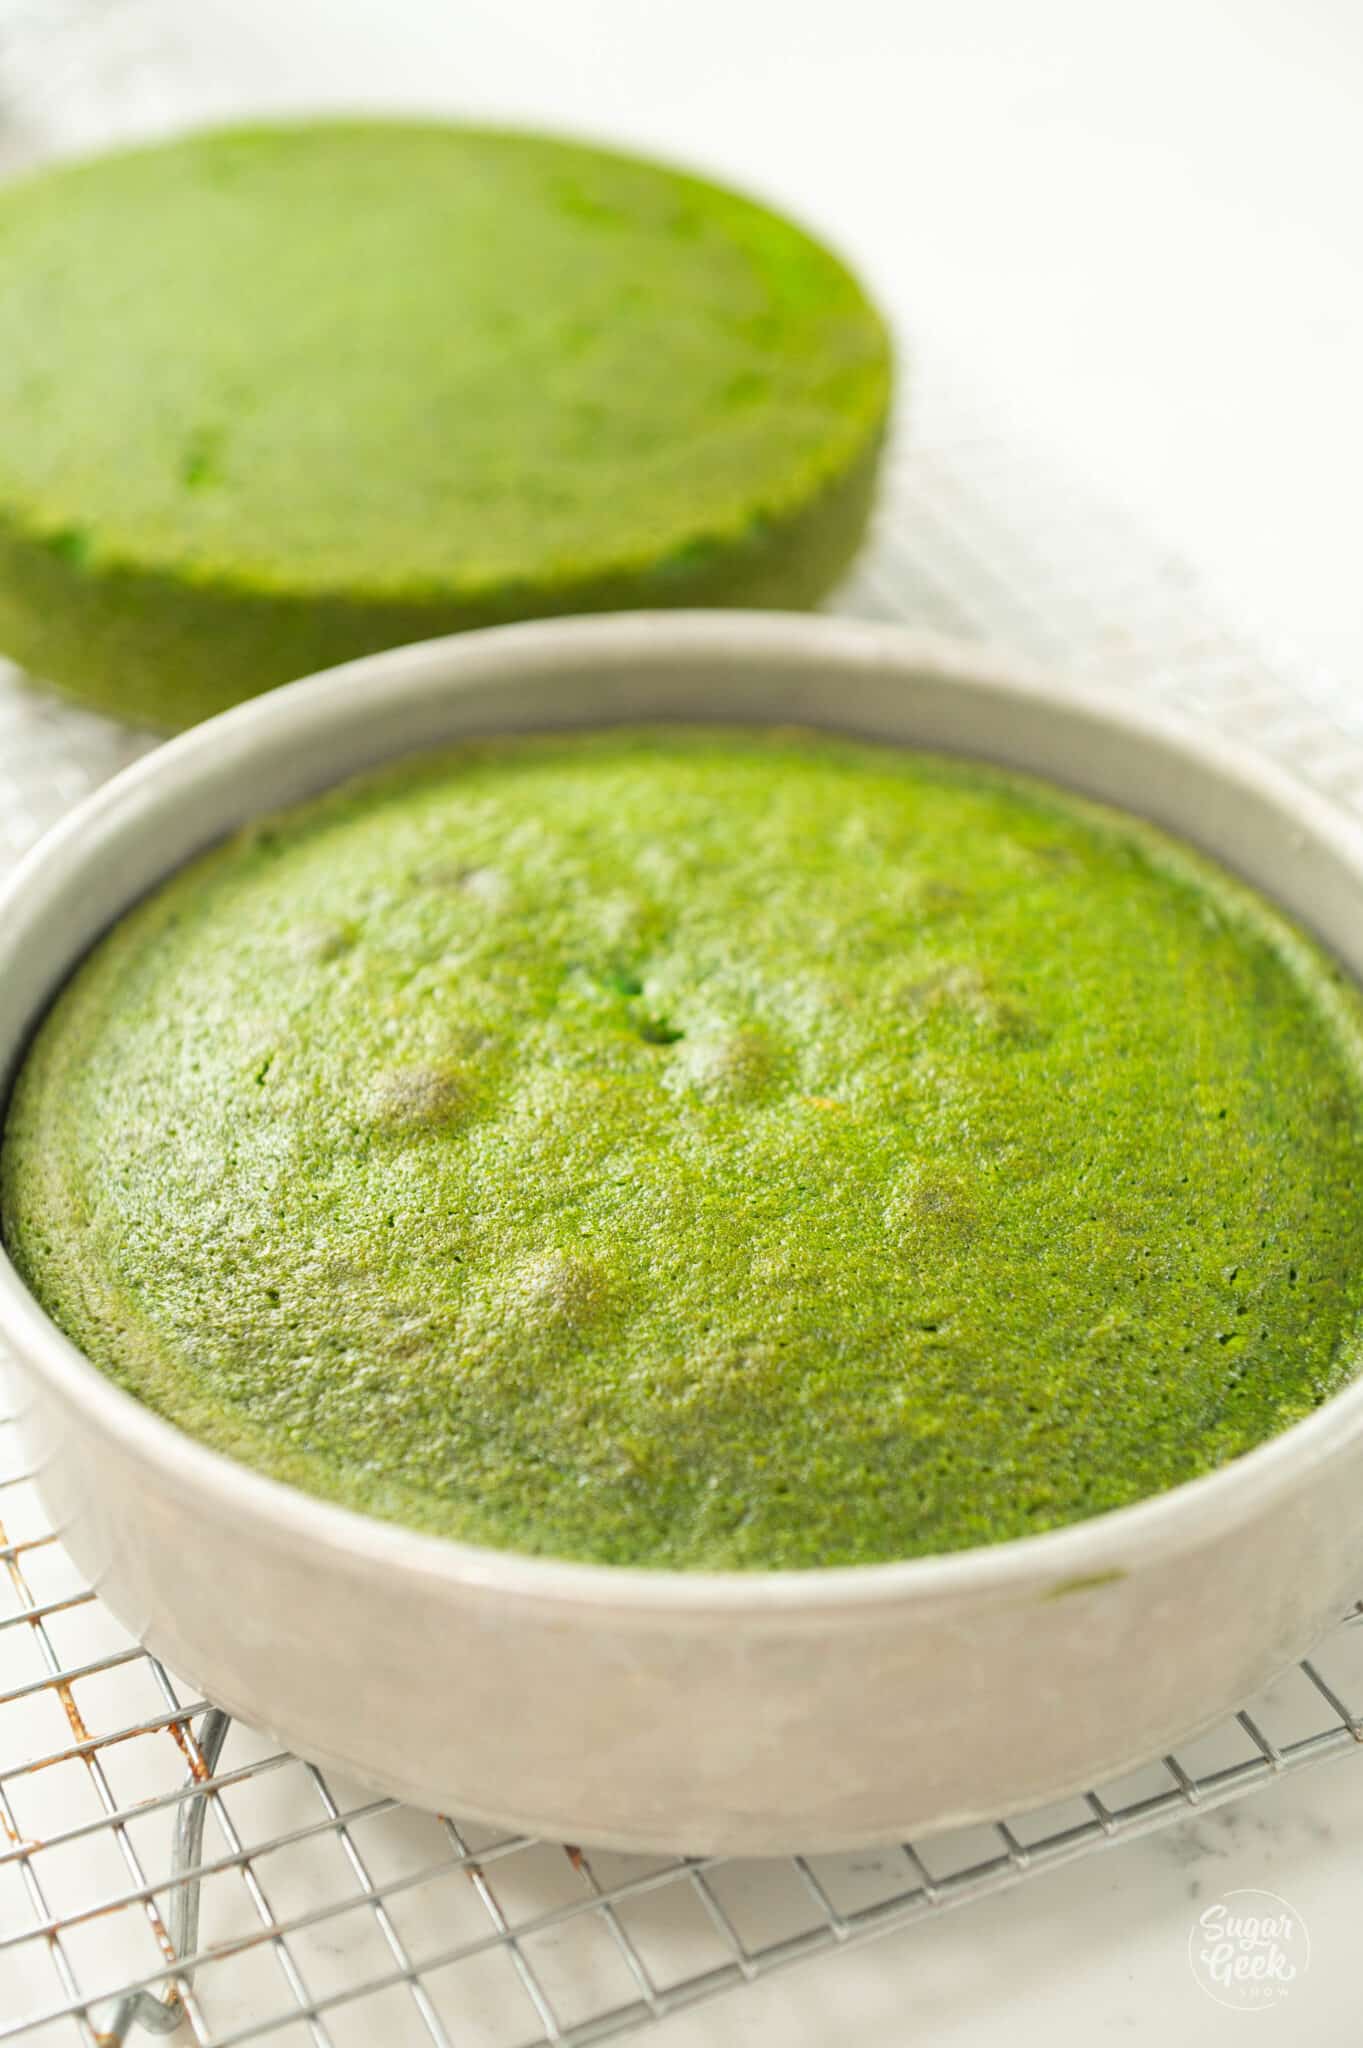 baked green velvet cakes in pans